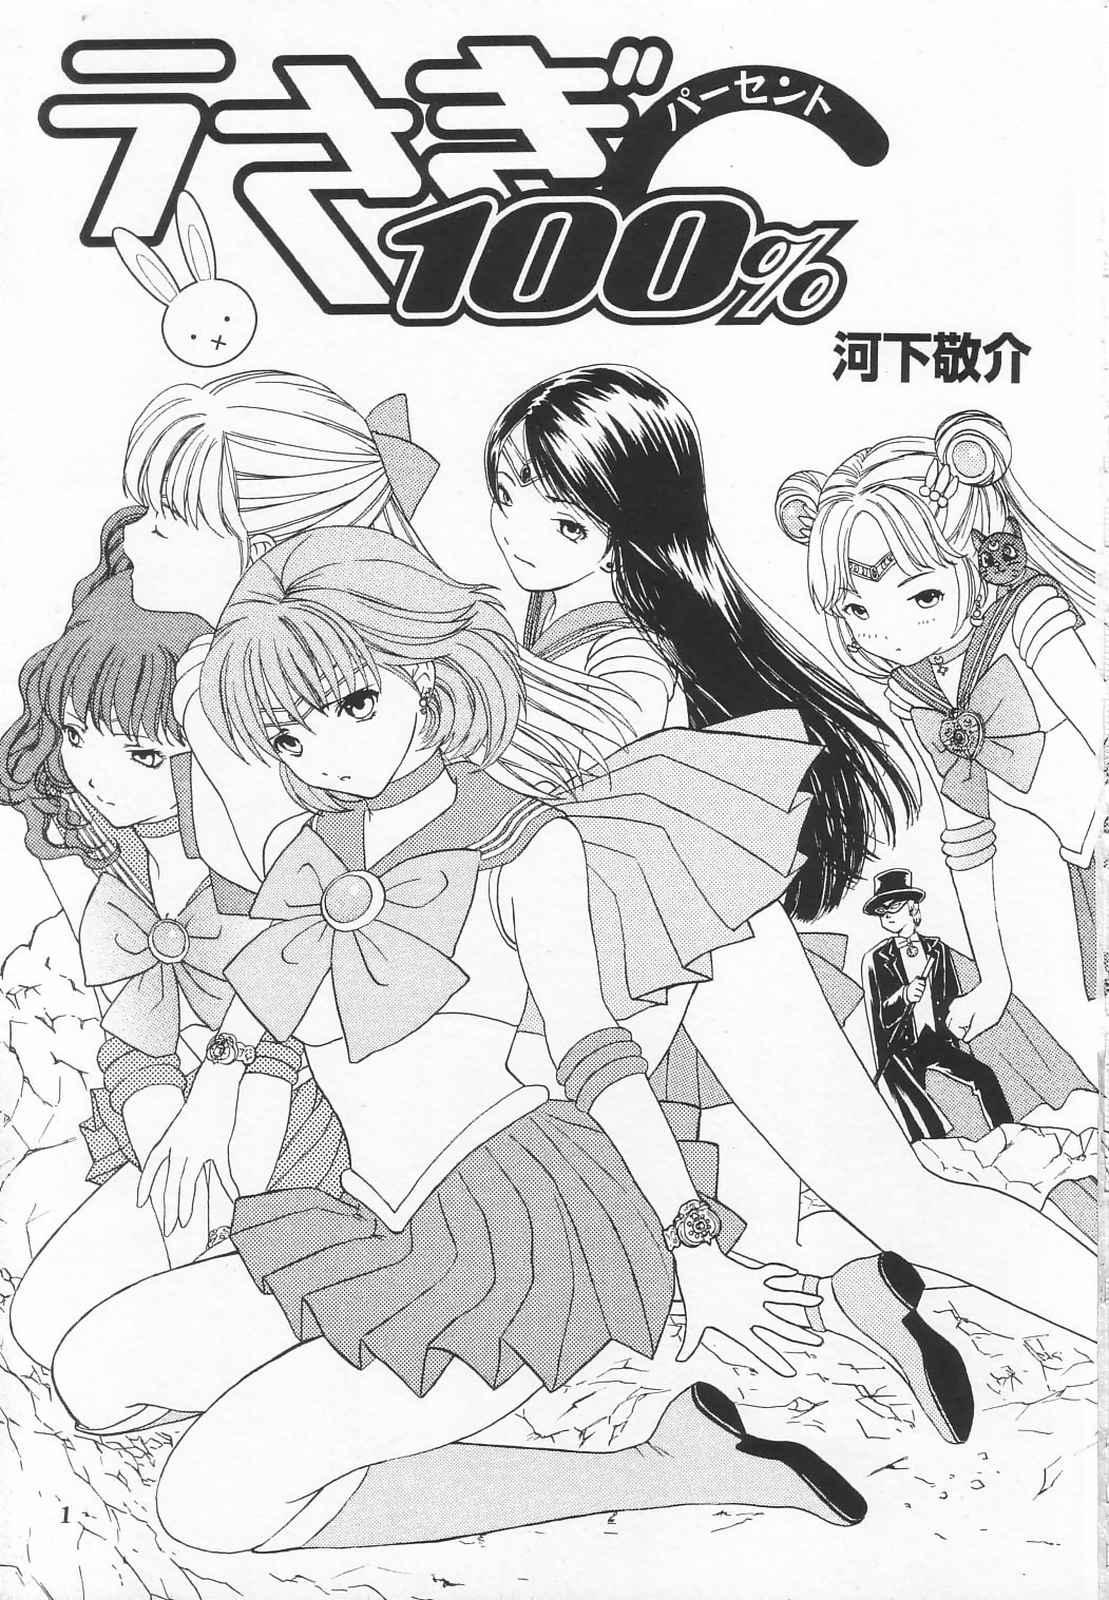 Storyline Tokusatsu Magazine x 2003 Fuyu Gou - Sailor moon Ichigo 100 Hot Pussy - Page 3